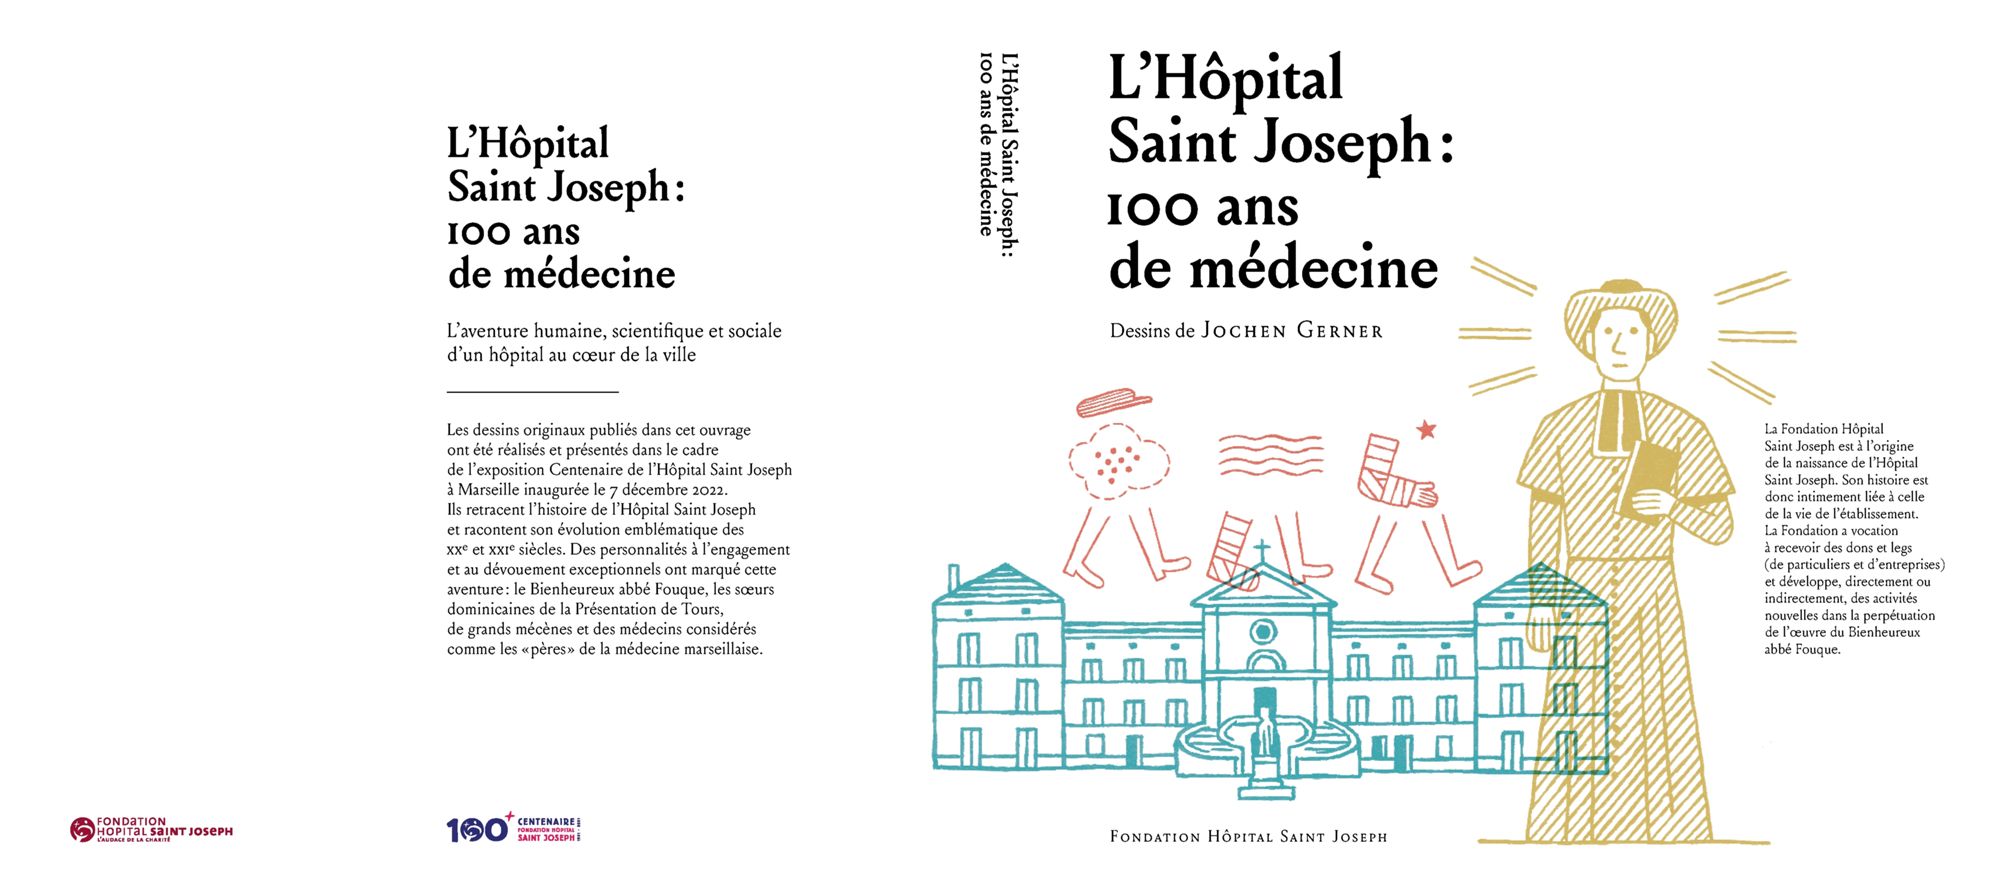 Le livre du Centenaire de l’Hôpital et de la Fondation